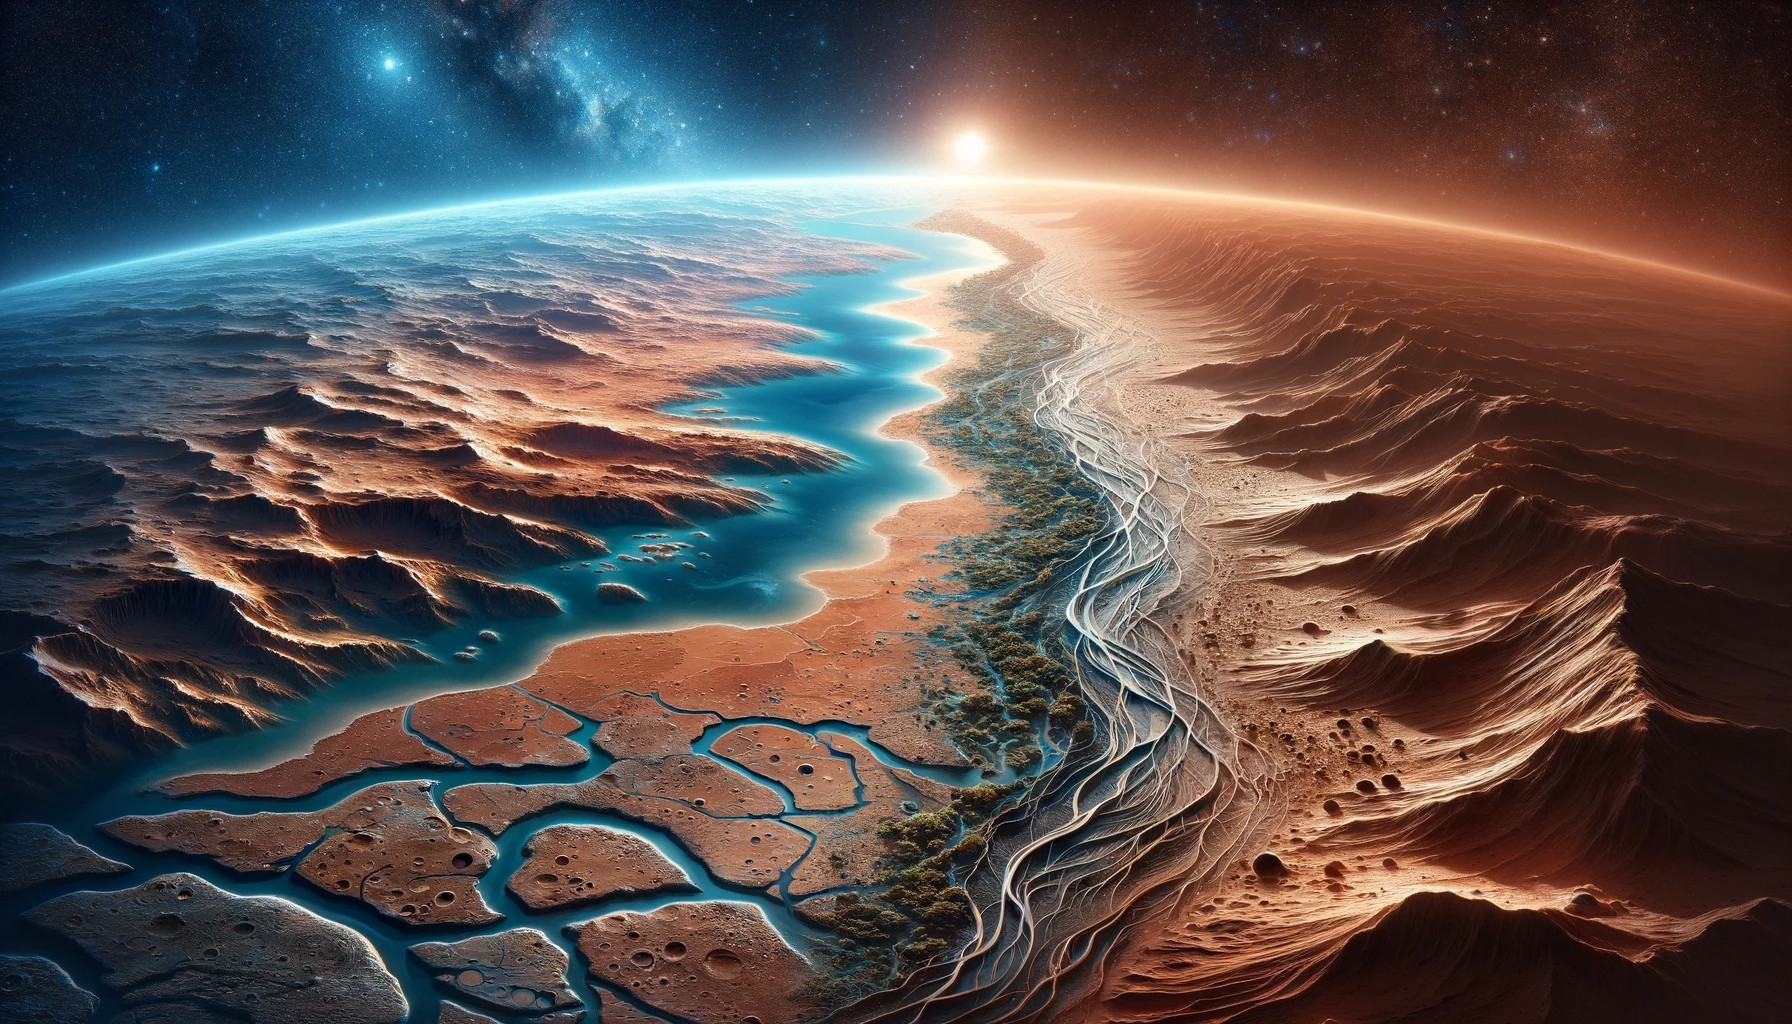 Un paisaje marciano mostrando un mundo antiguo con ríos y océanos, contrastando con su estado actual árido y desértico. En una mitad, se observa un Marte vibrante y lleno de vida; en la otra, el Marte actual, seco y polvoriento